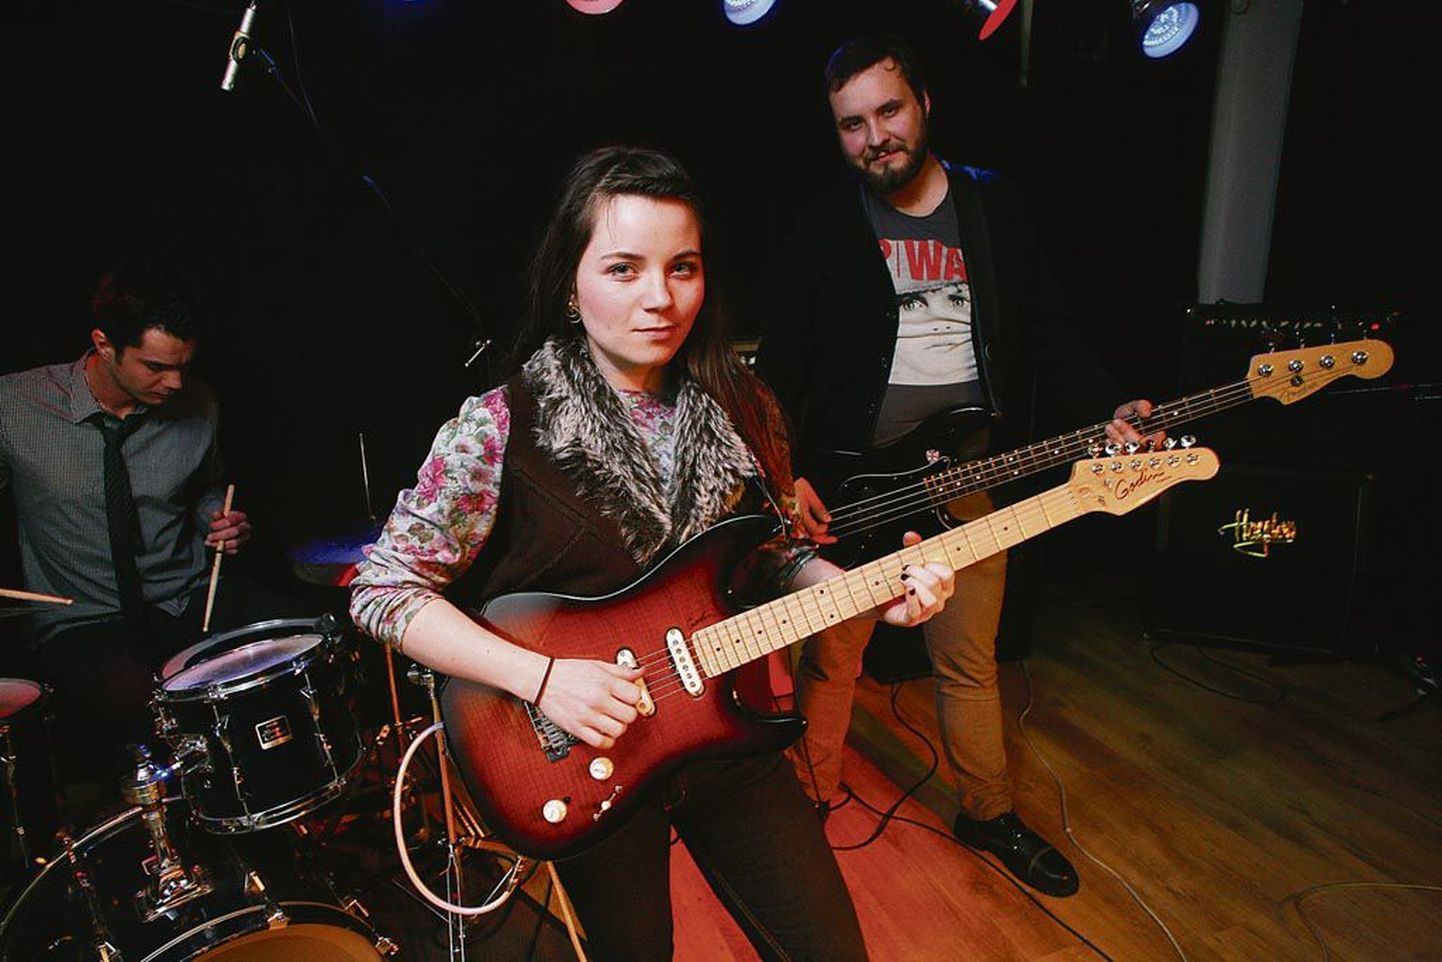 Sibyl Vane sai alguse Pärnu noorte vabaajakeskuse prooviruumis, kus kohtab noori muusikuid siiani.